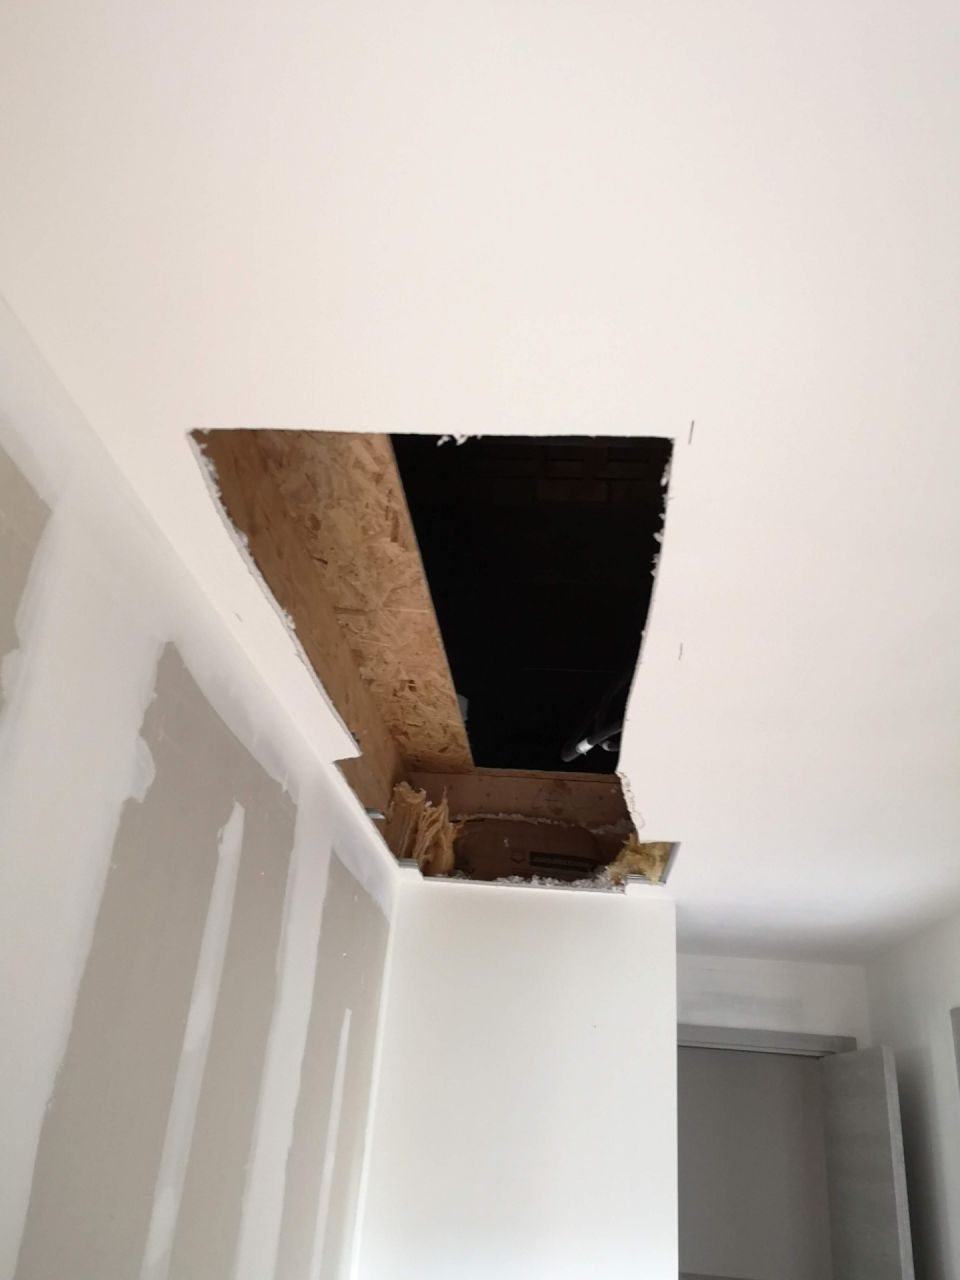 Ouverture du plafond pour faire les travaux dans les combles. Dommage qu'on ait pas pu le faire avant